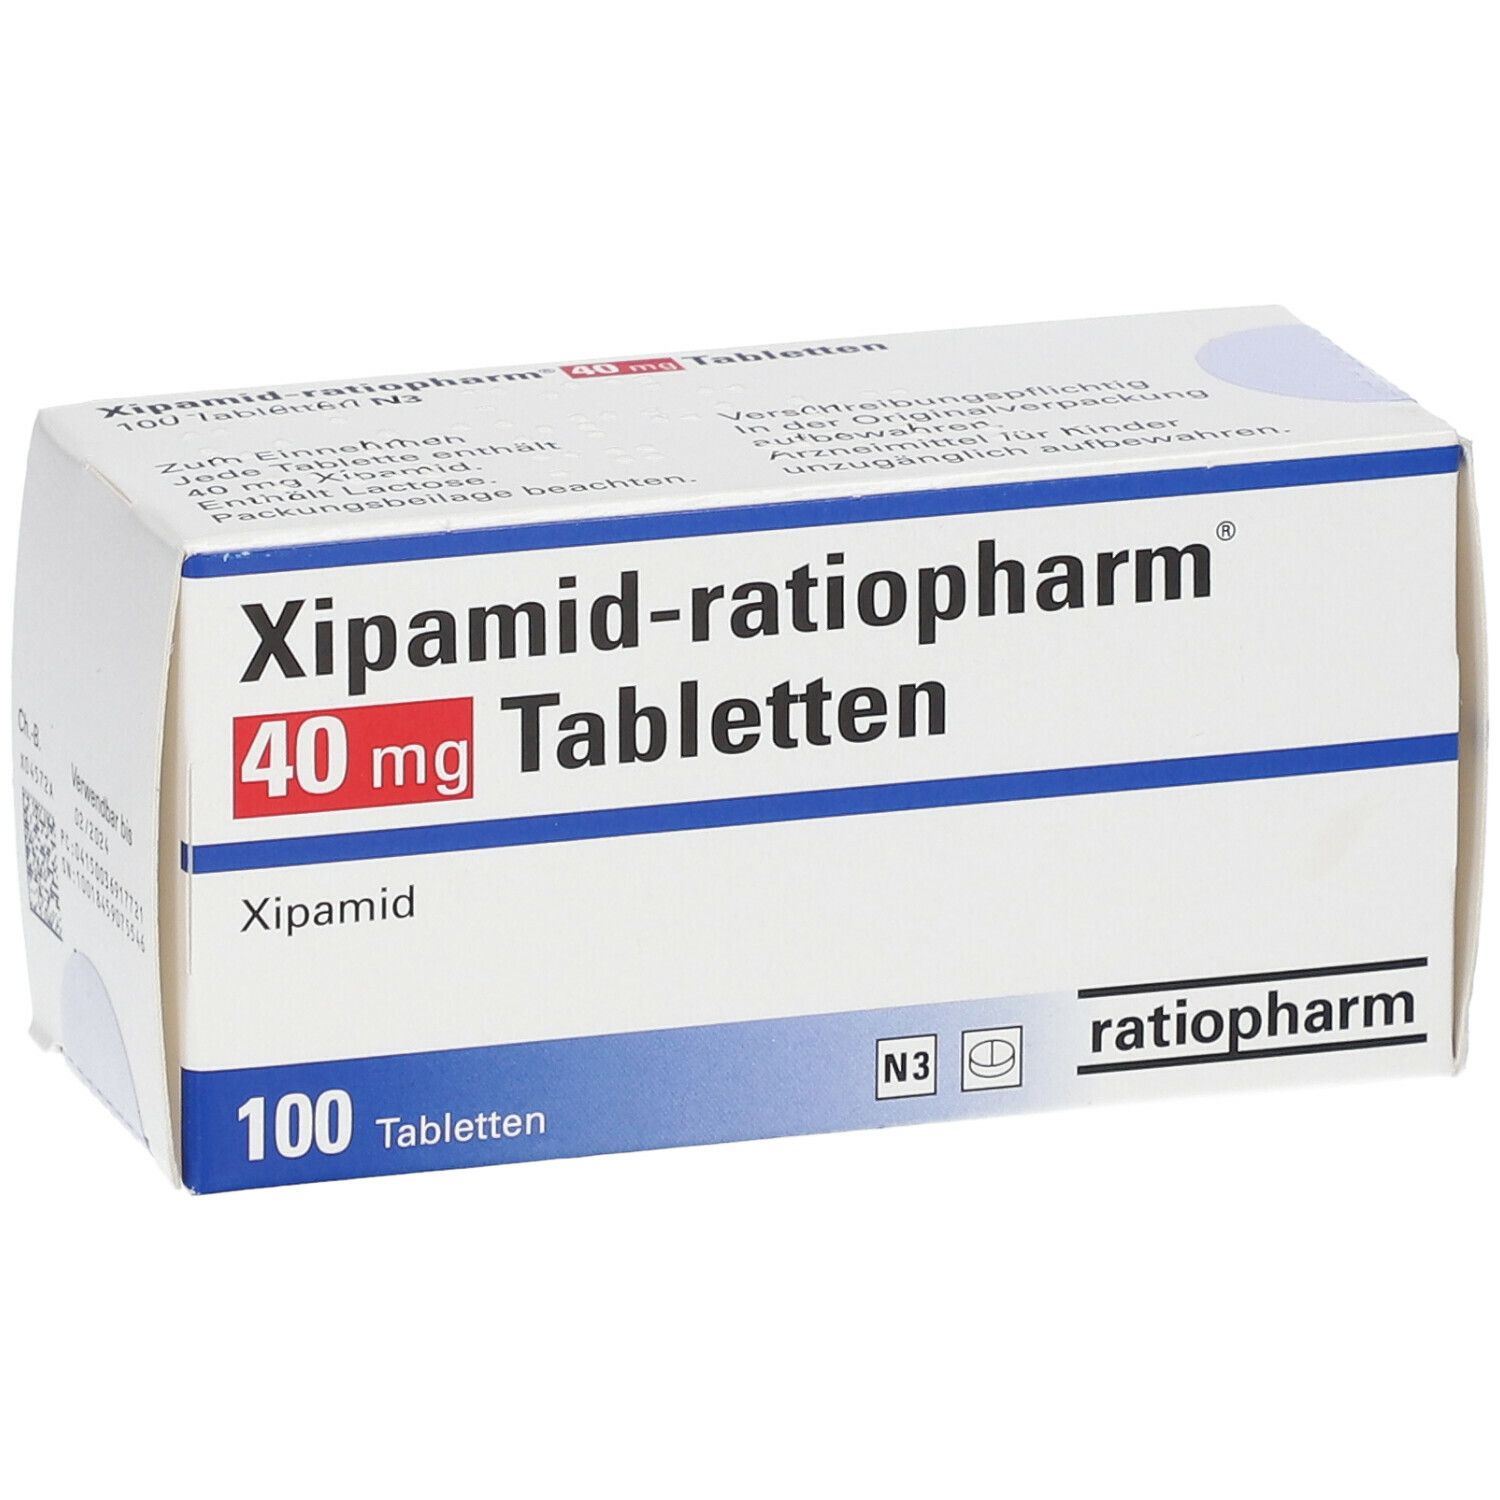 Xipamid-ratiopharm® 40 mg